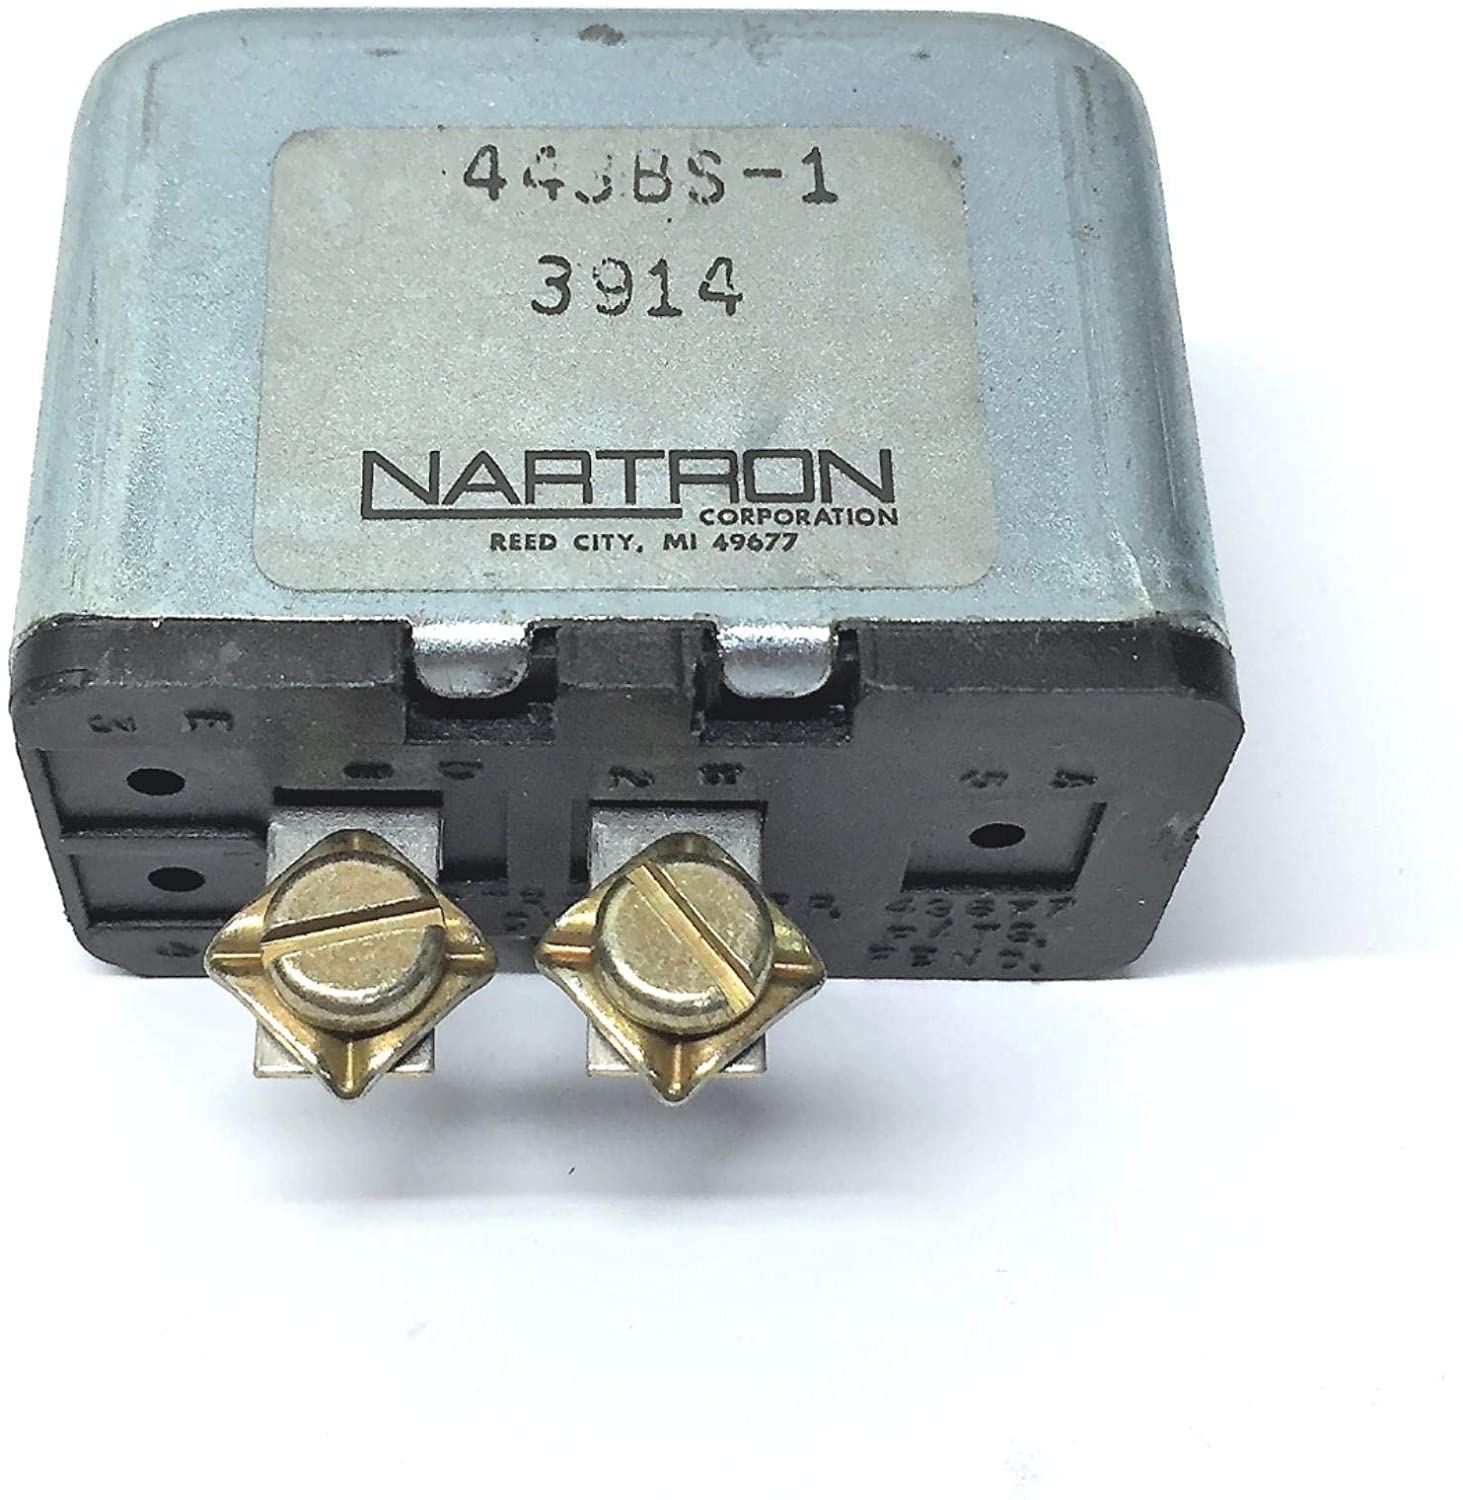 Nartron Flasher Relay 443BS-1 NOS